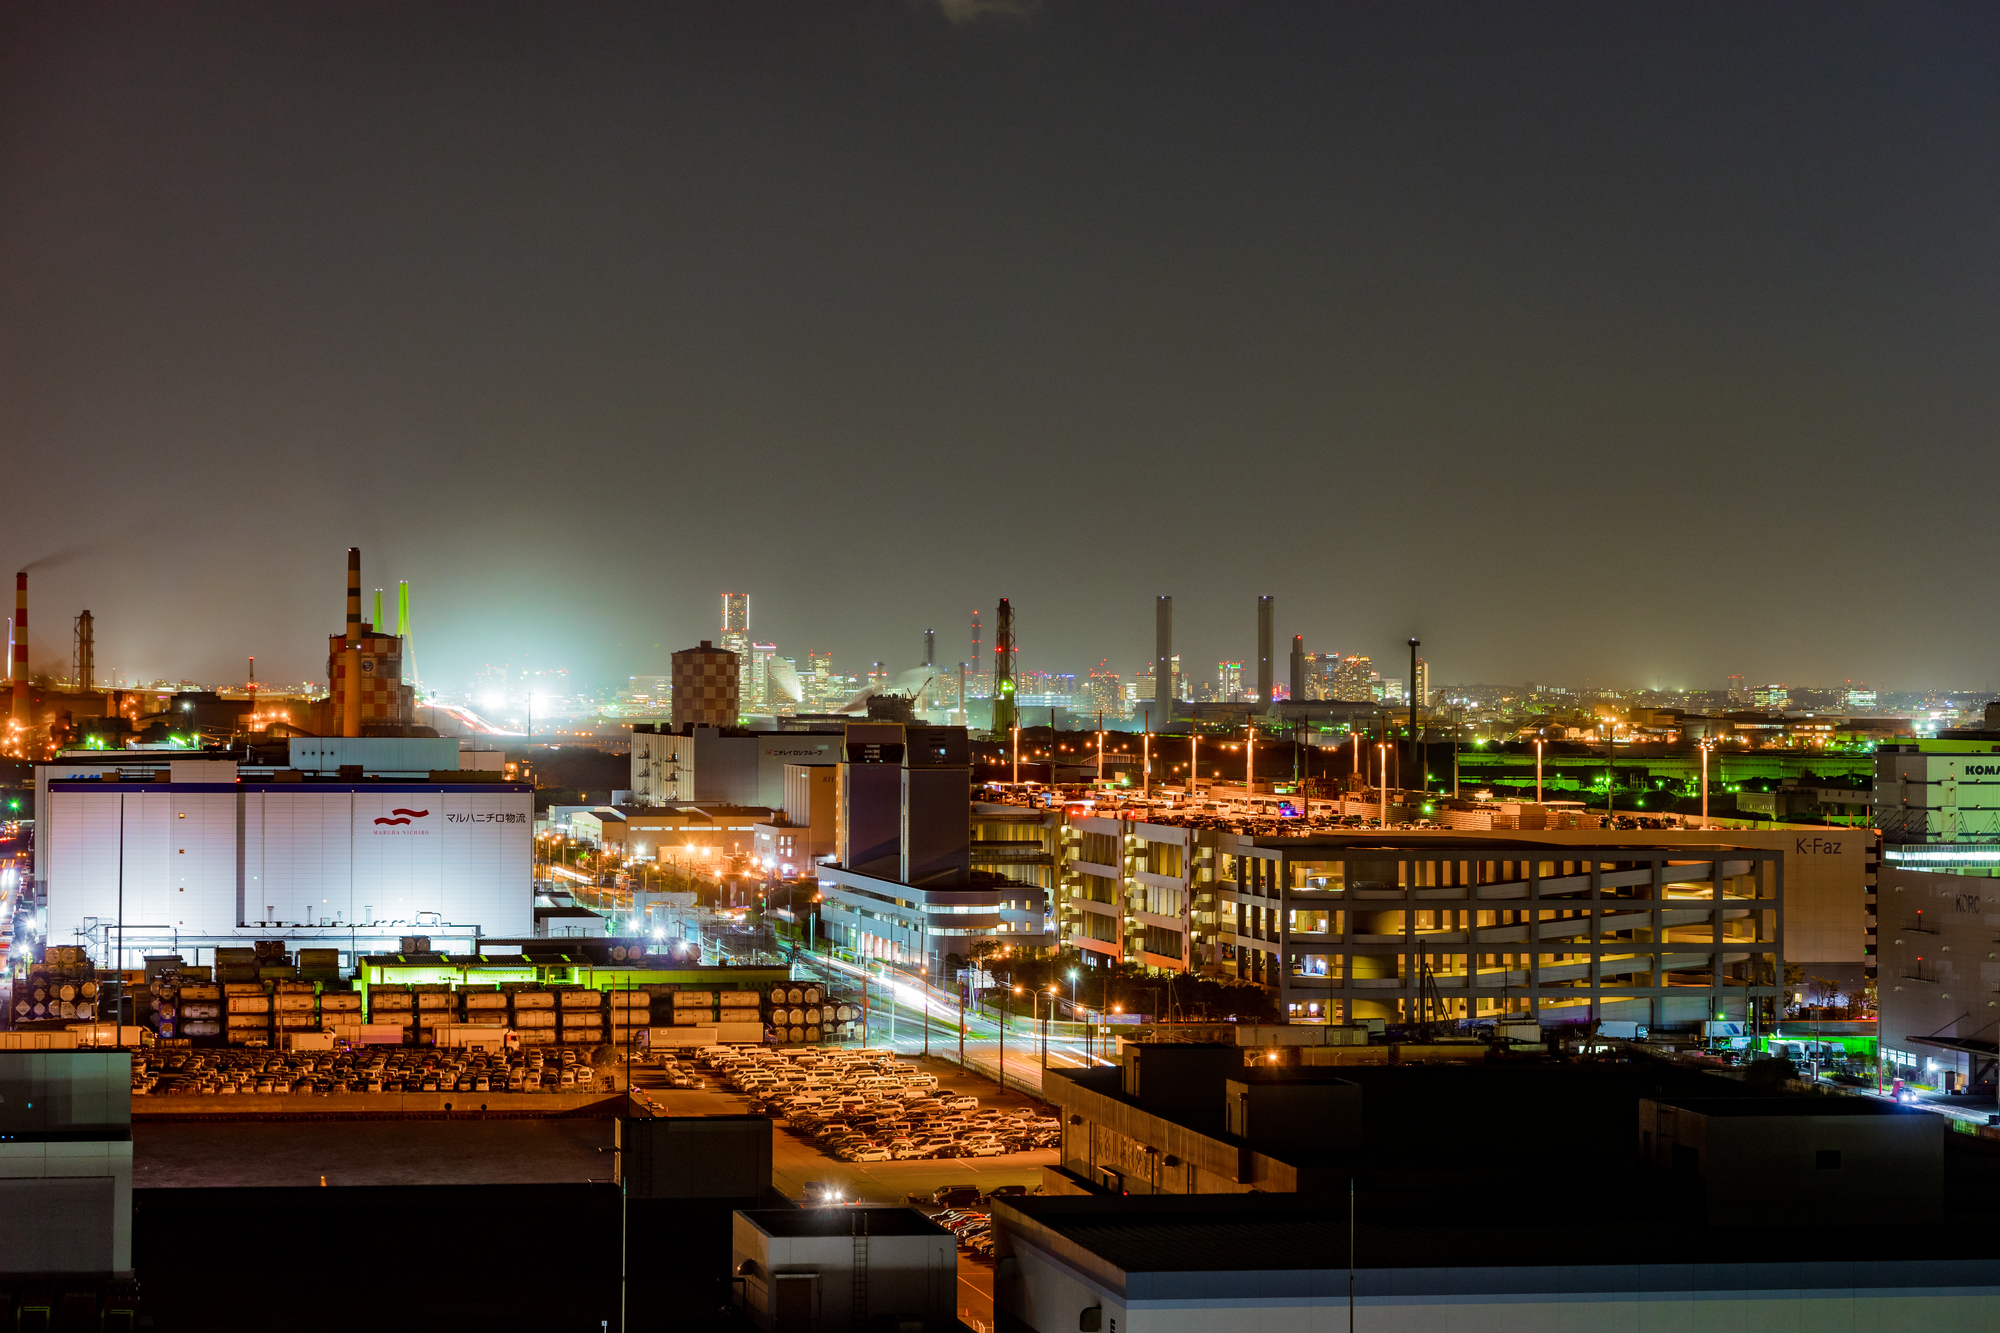 ライトアップされ幻想的な雰囲気の工場夜景